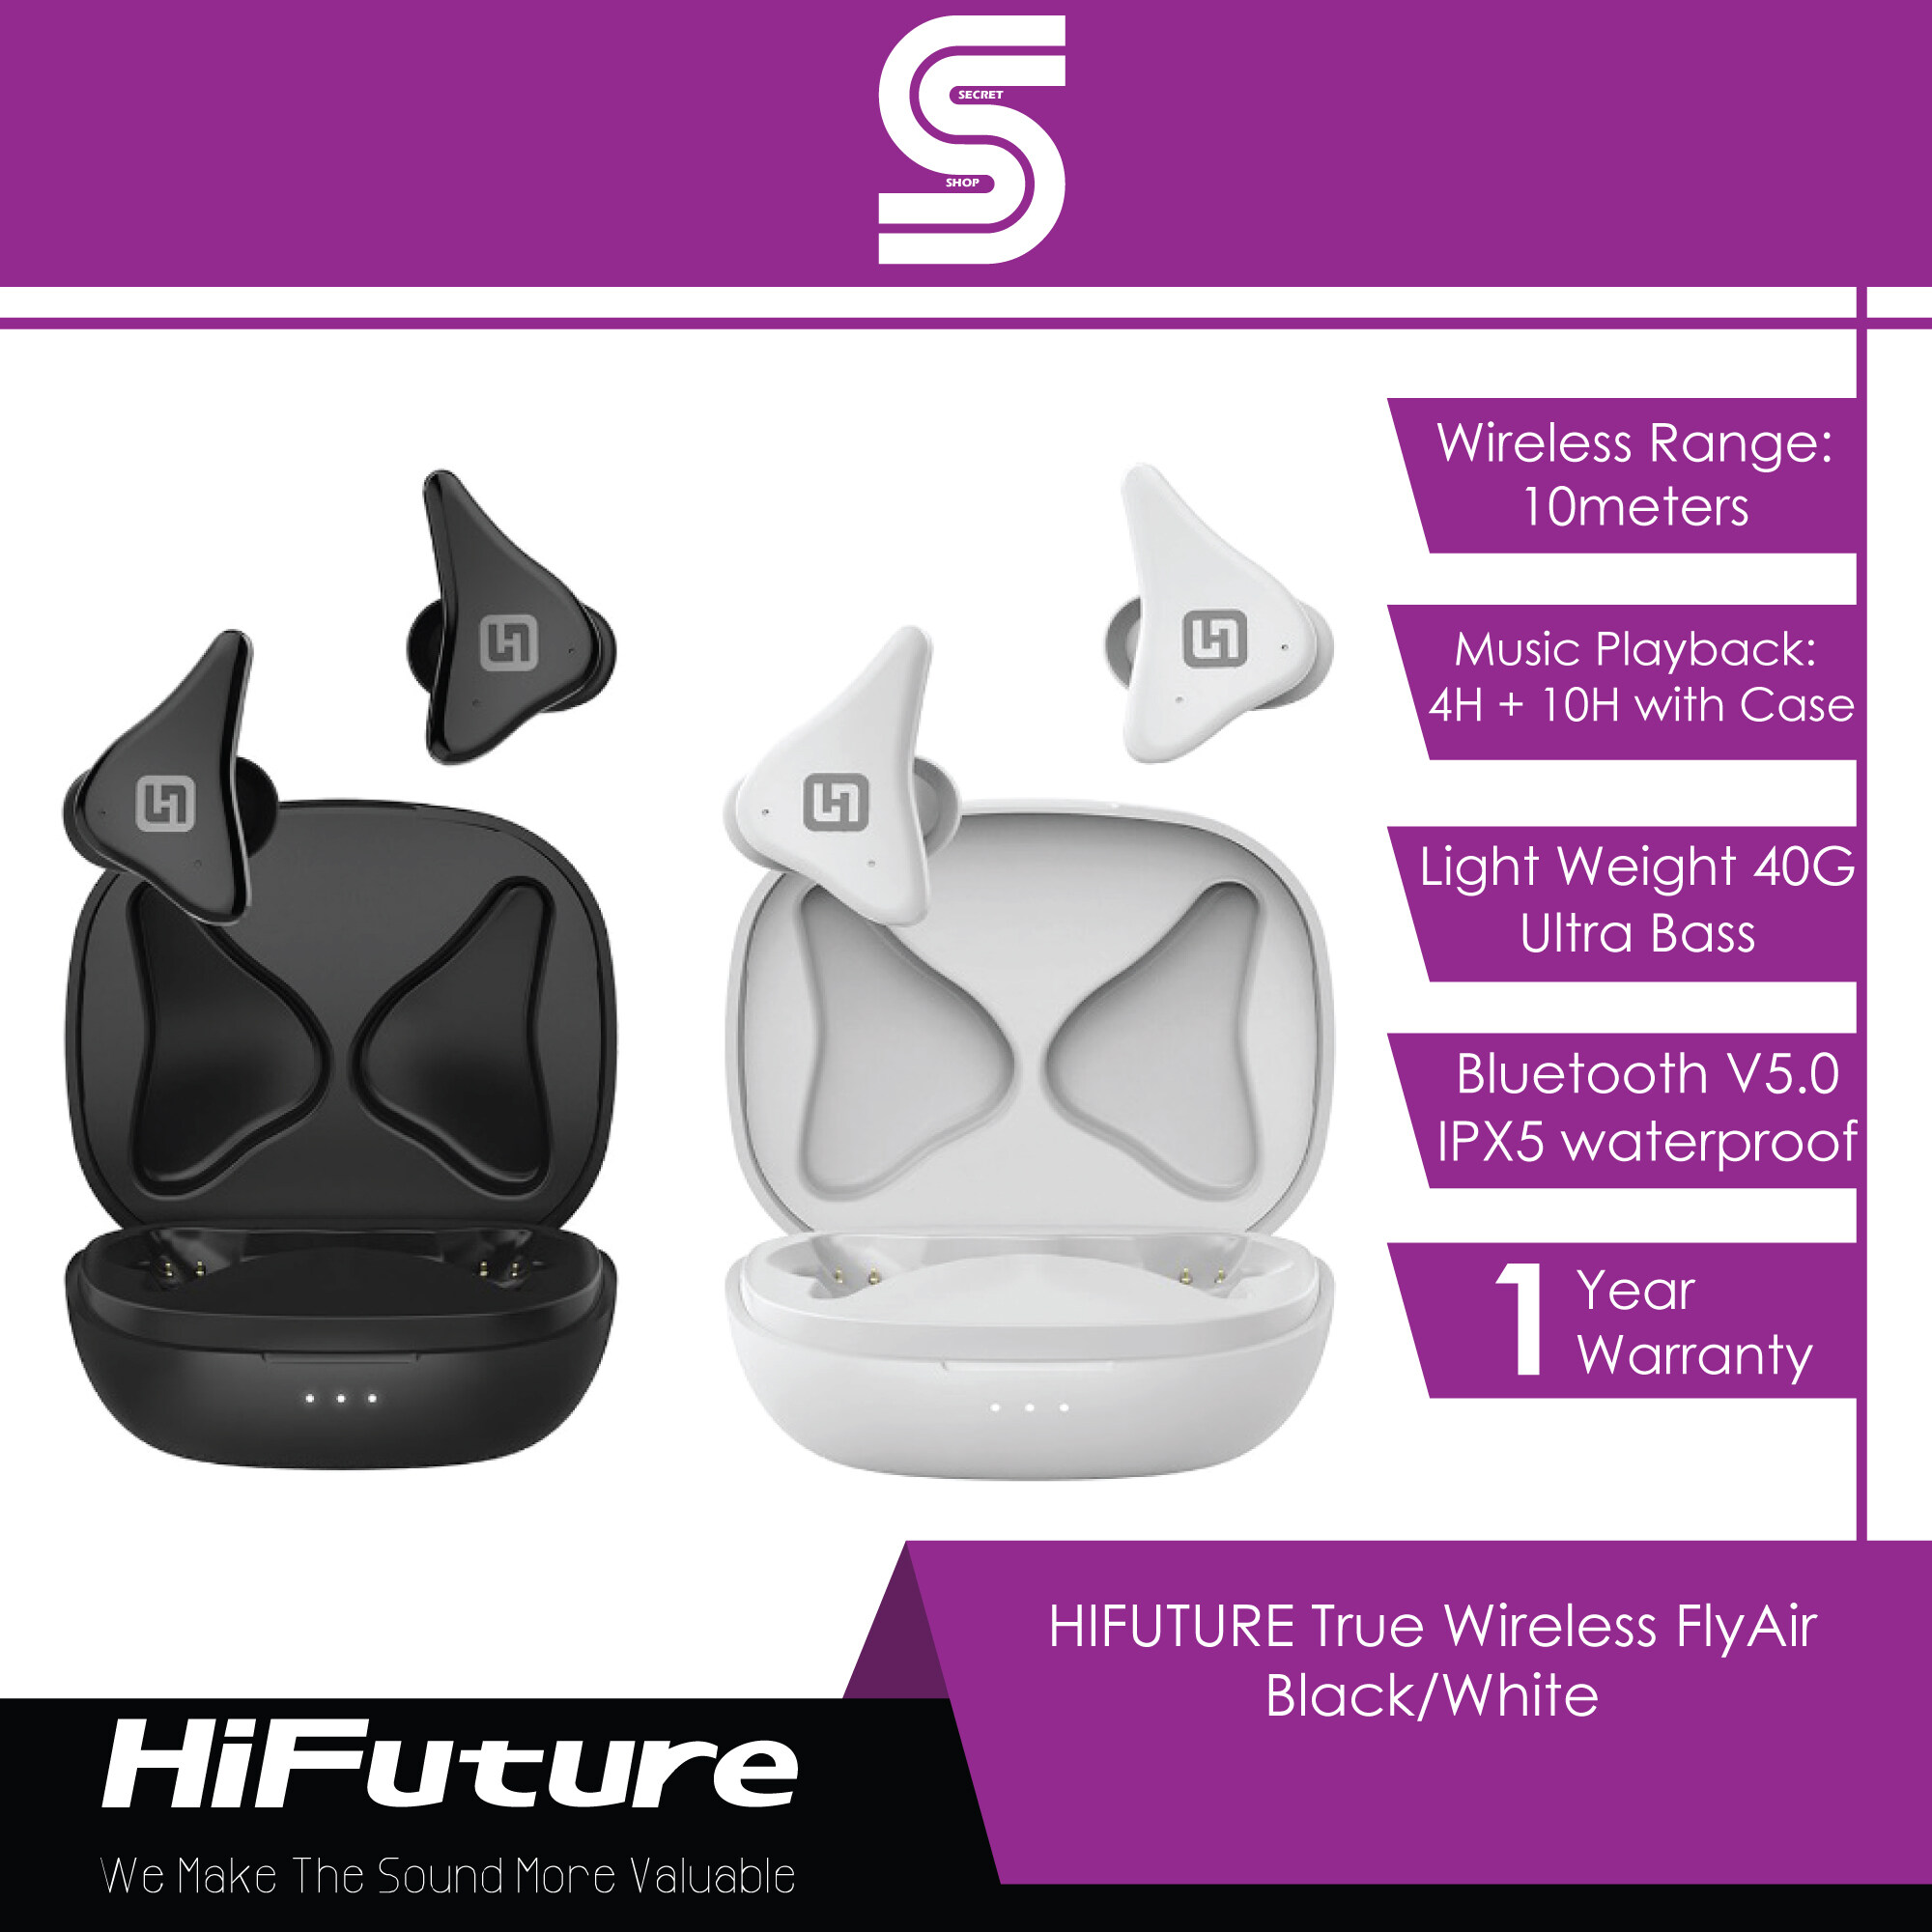 HIFUTURE True Wireless FlyAir - Black/White